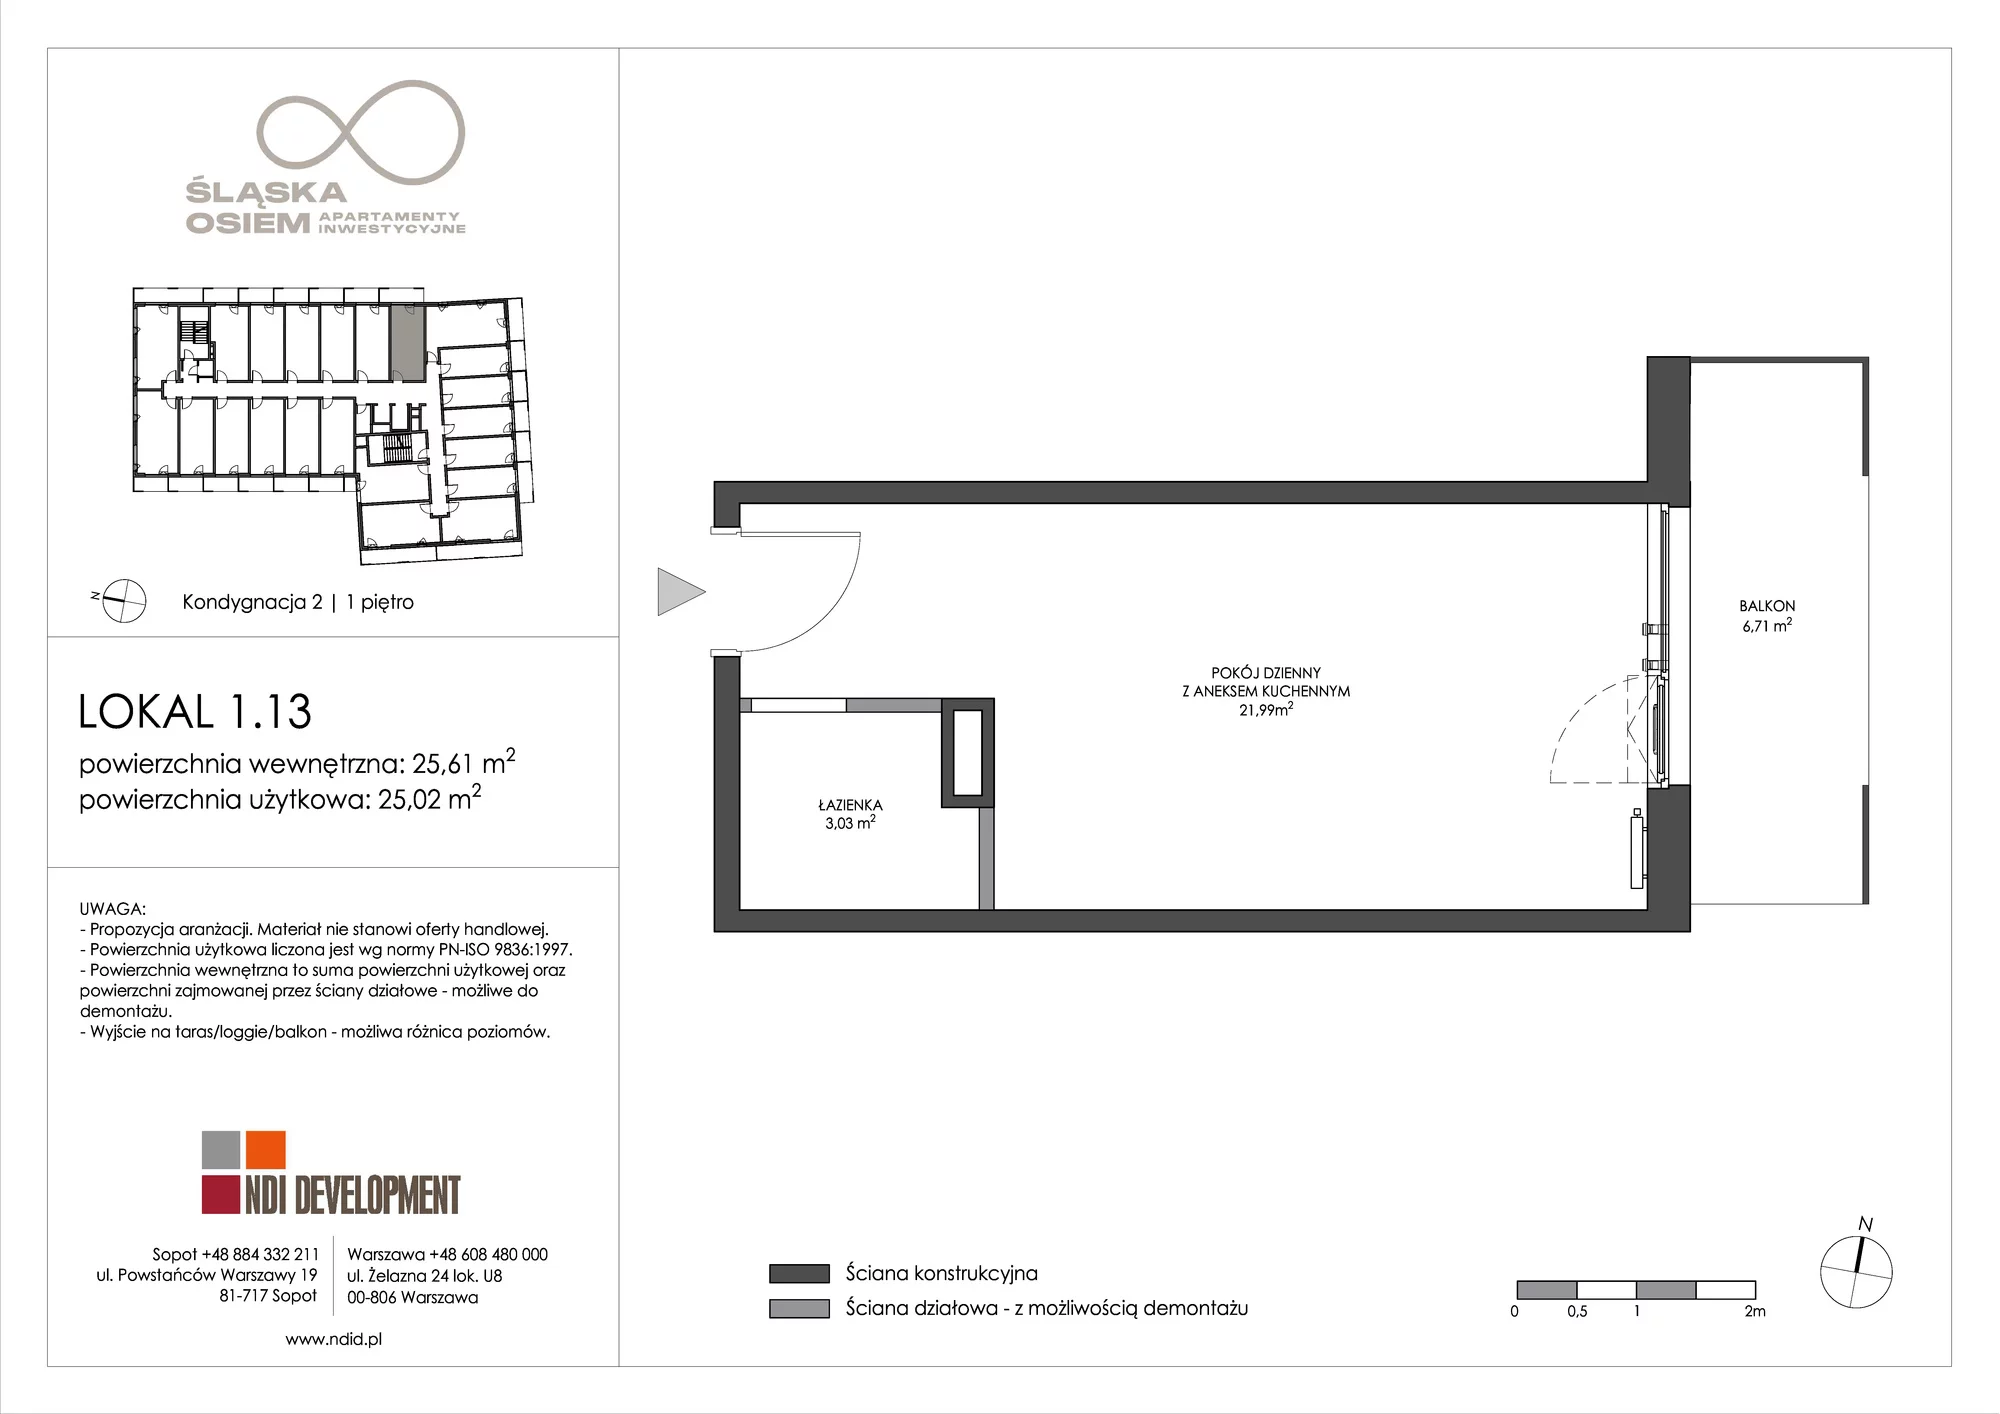 Apartament inwestycyjny 25,61 m², piętro 1, oferta nr 1.13, Śląska Osiem, Gdańsk, Przymorze, ul. Śląska 8